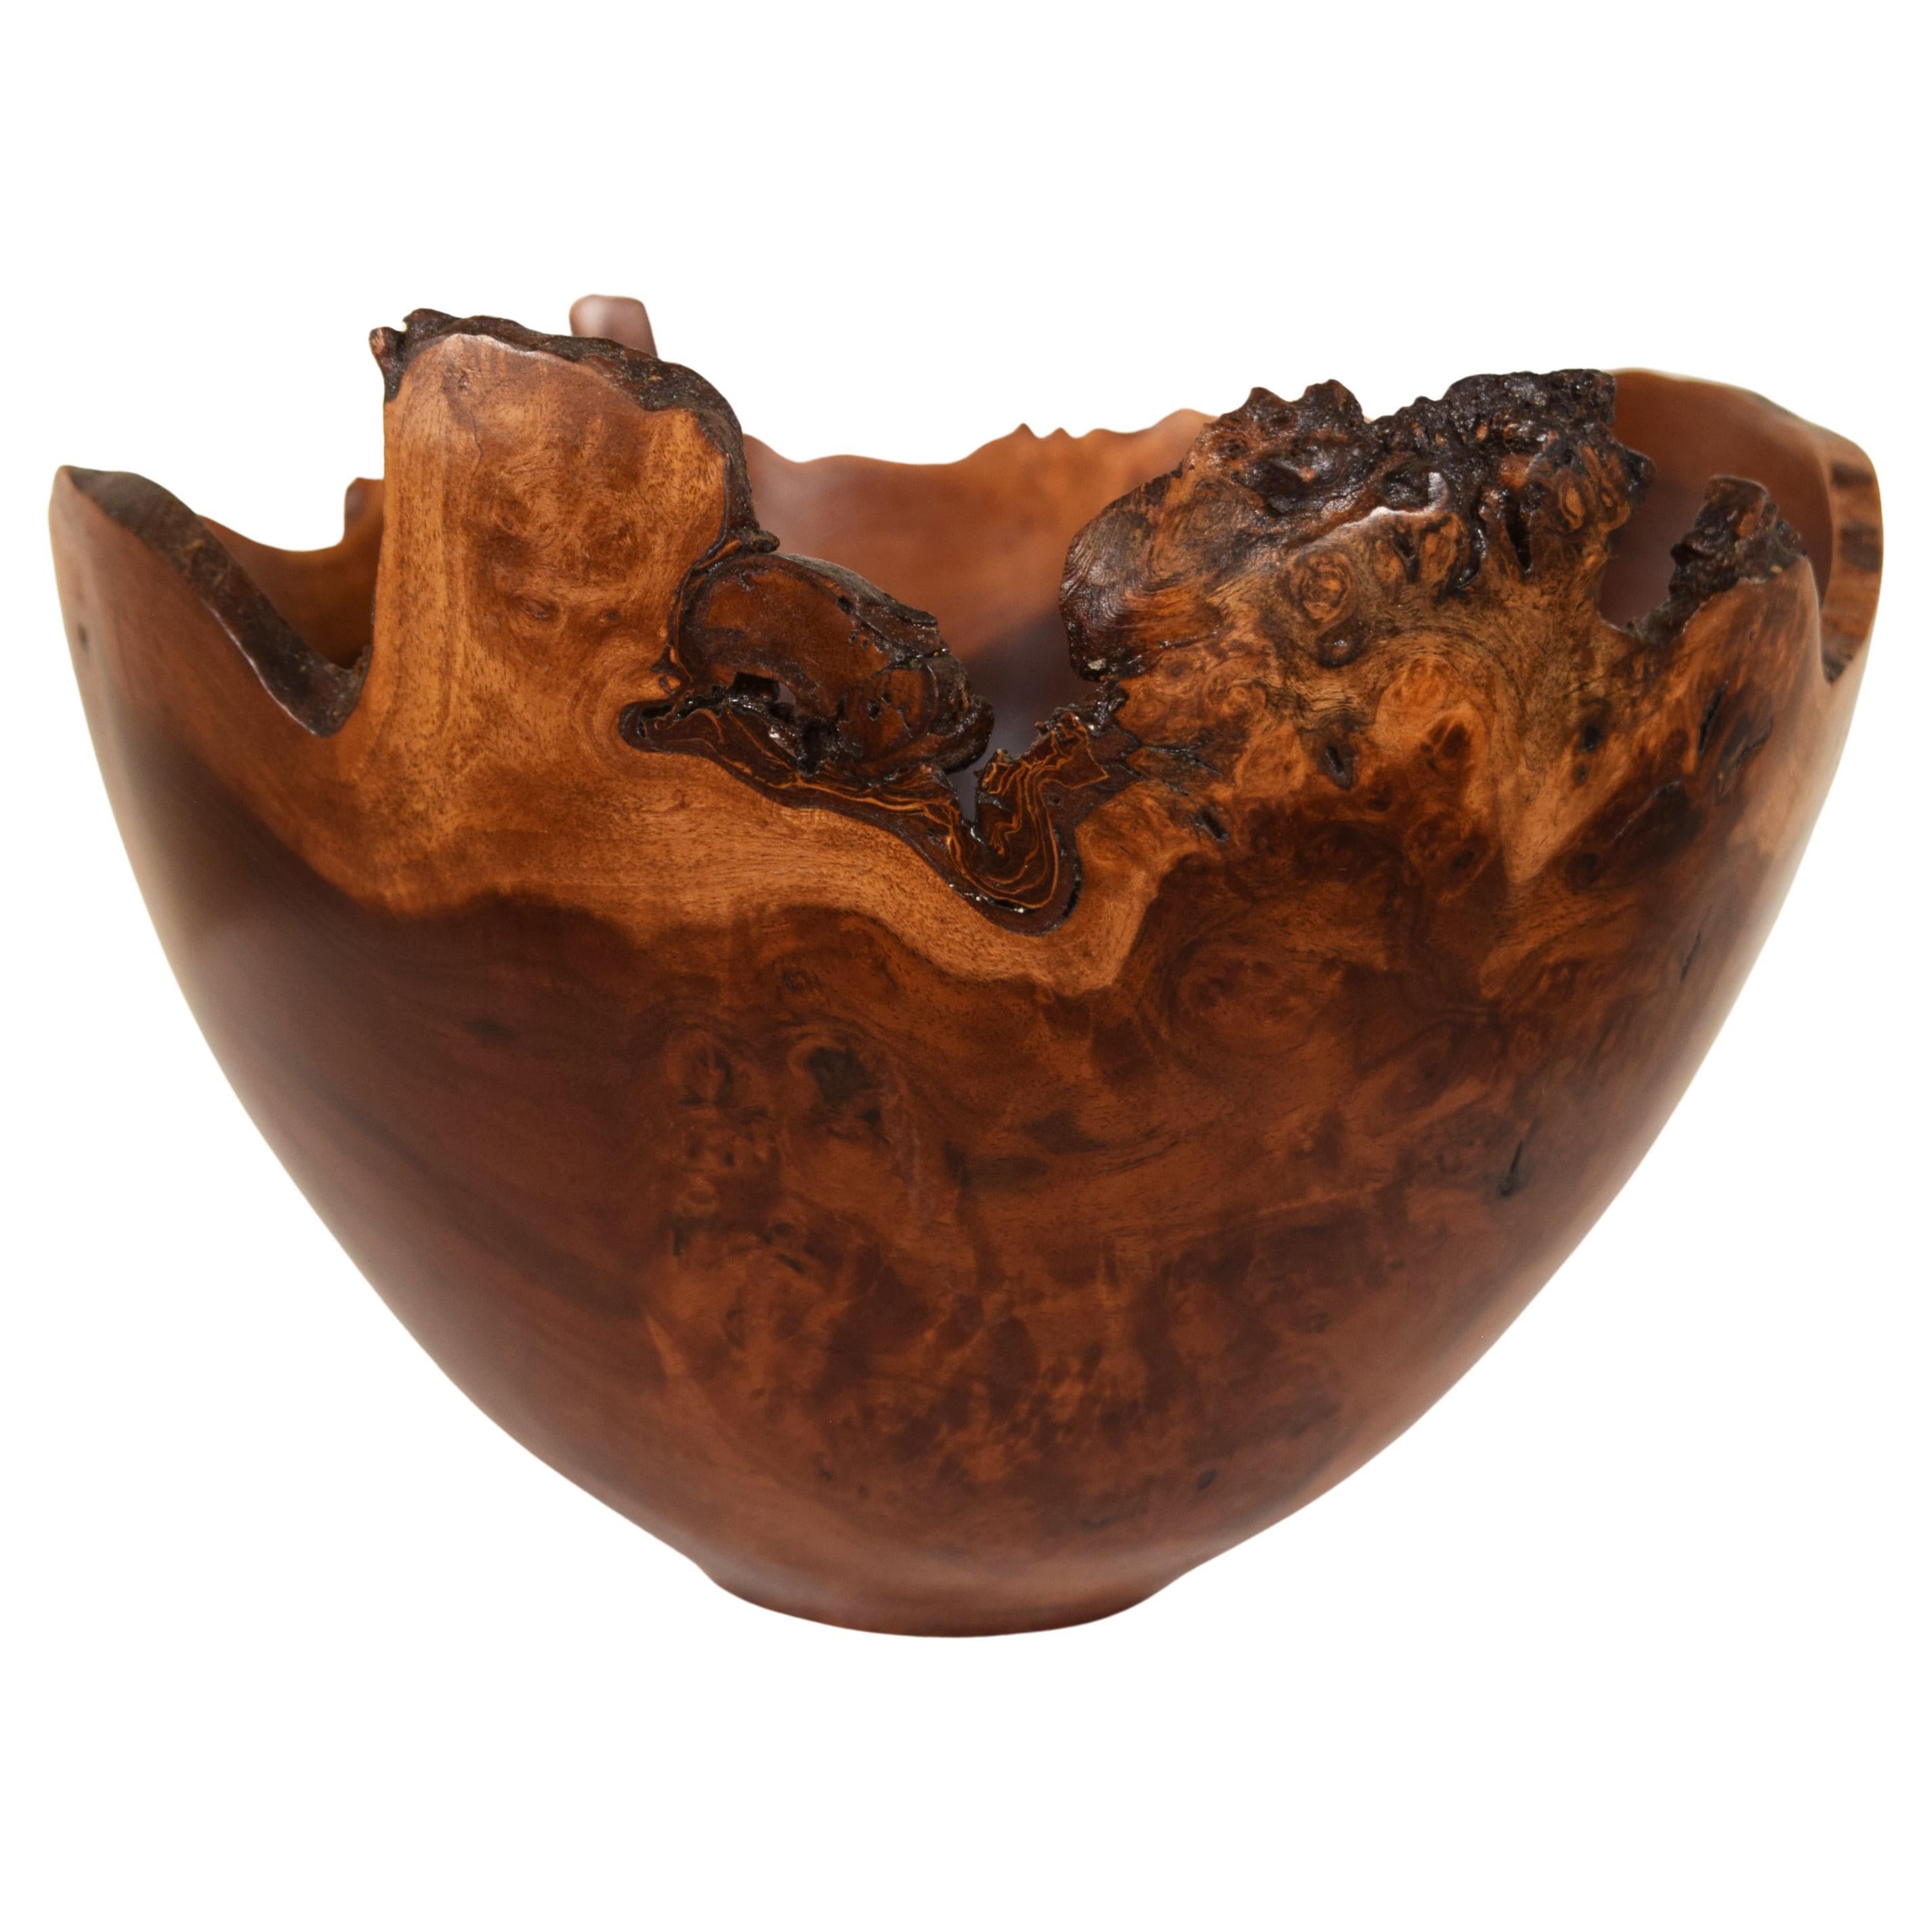 Unique Wood Turned Maple live natural edge goblet vase vessel fantastic unbelievable grain 1880